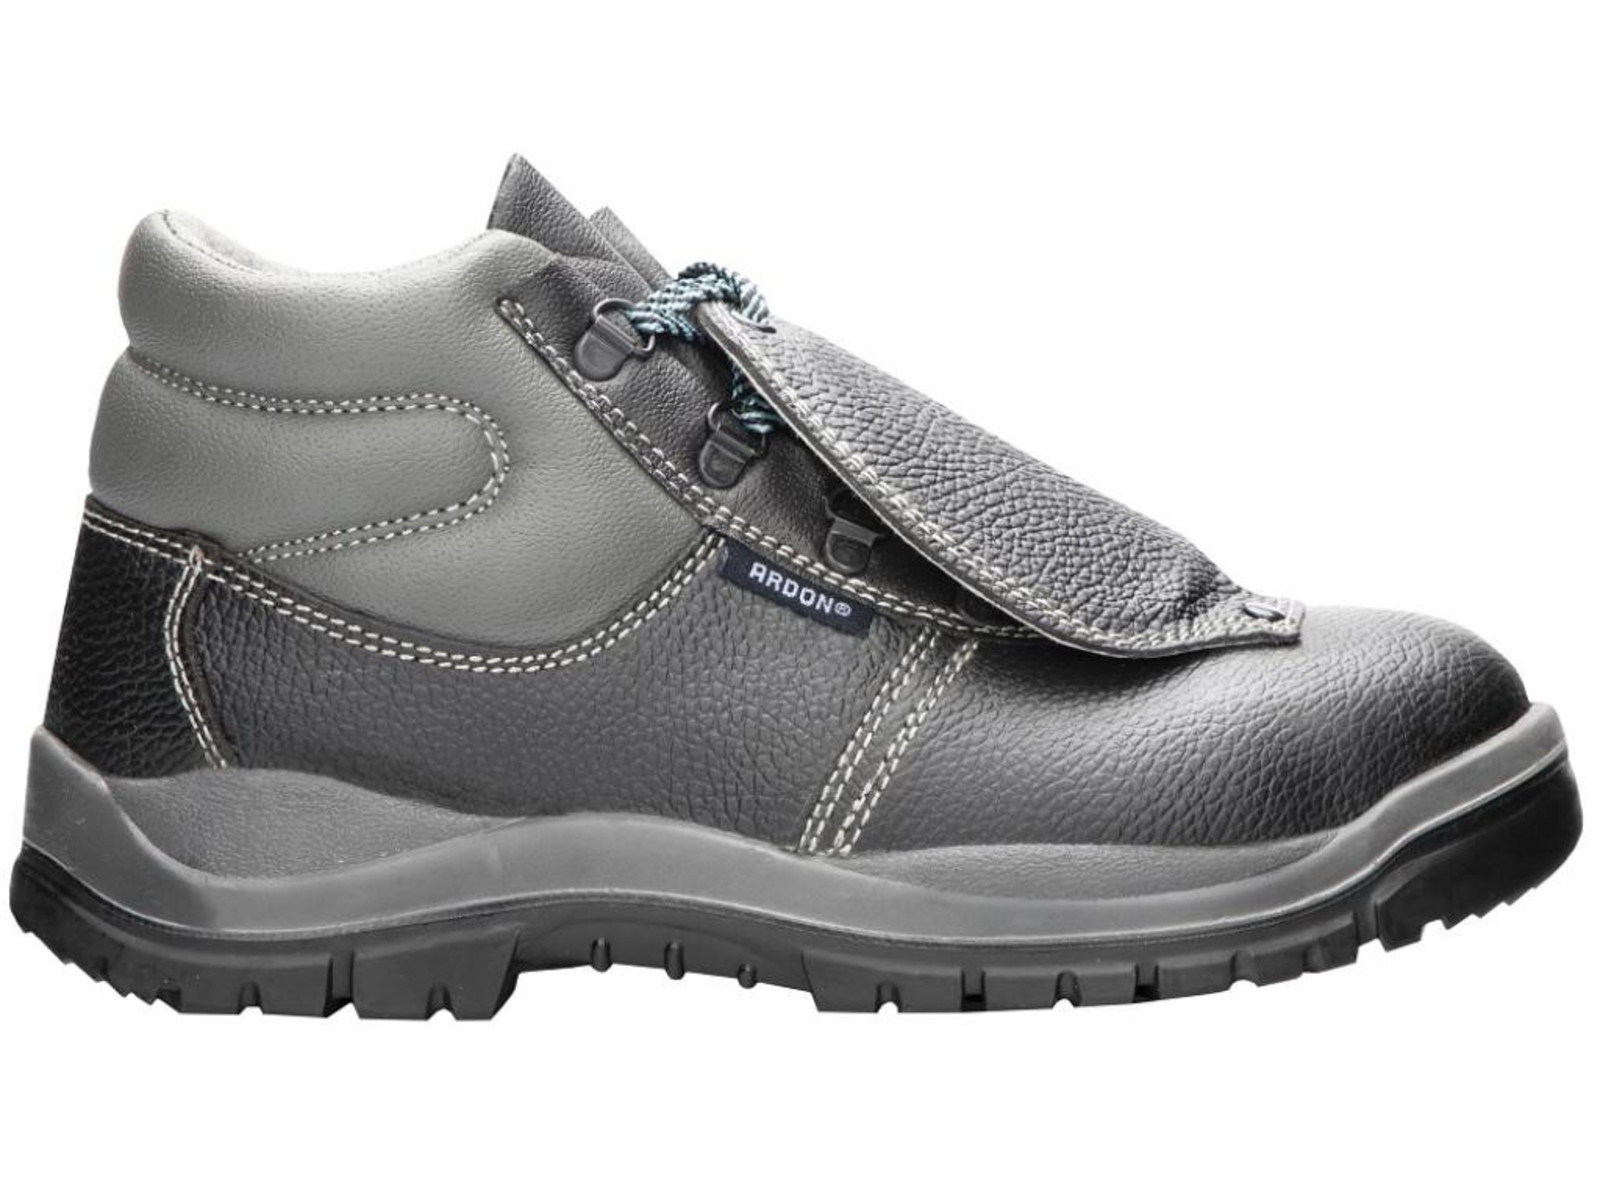 Bezpečnostná obuv ARDON® Integral S1P - veľkosť: 42, farba: sivá/čierna